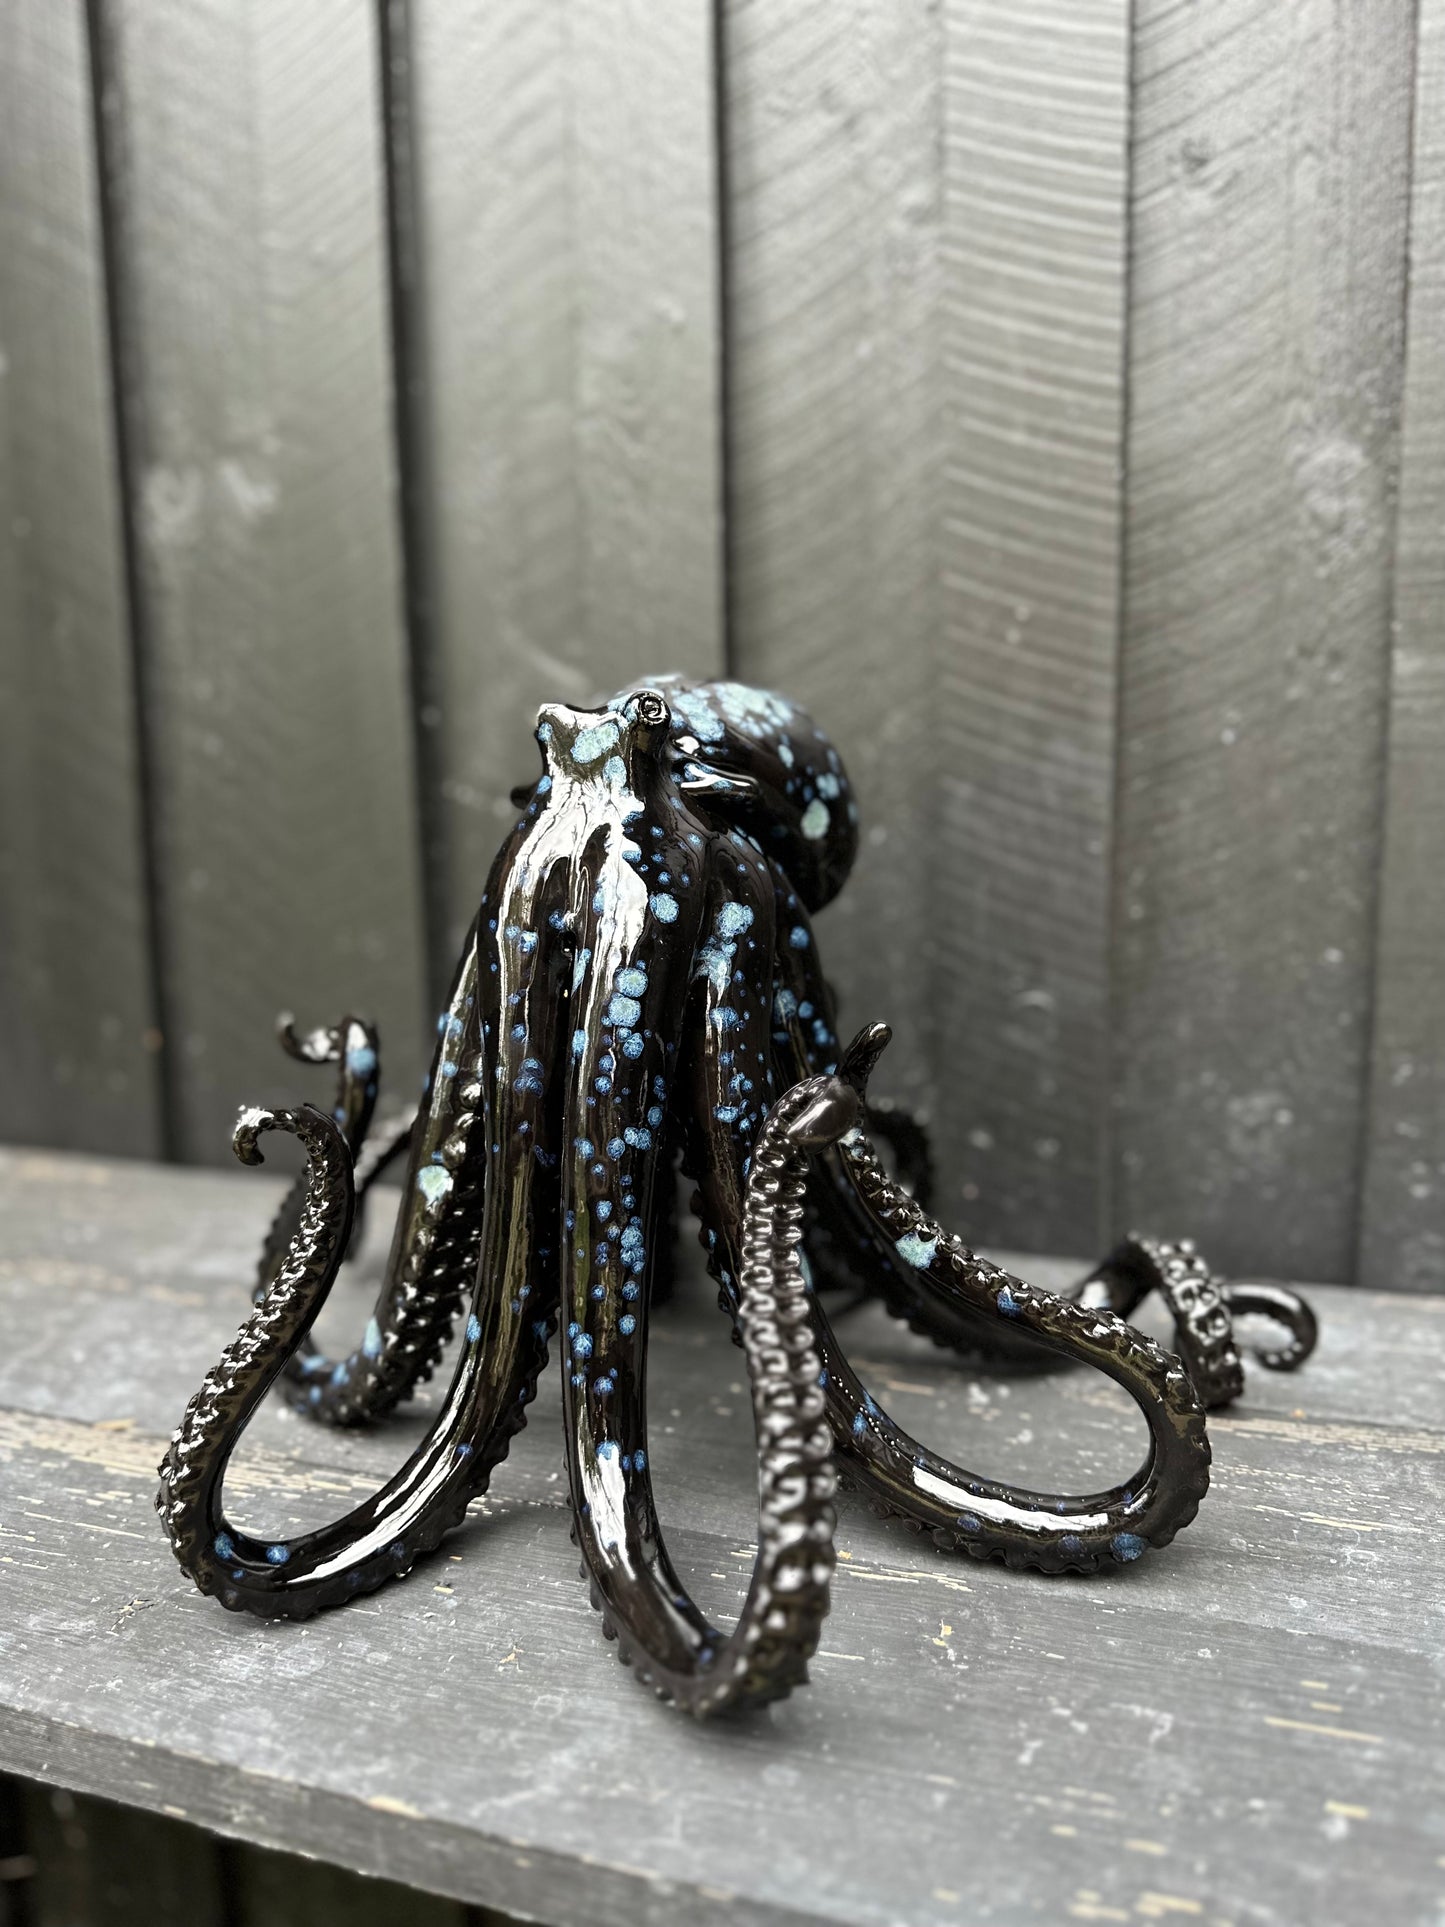 Black/blue squid